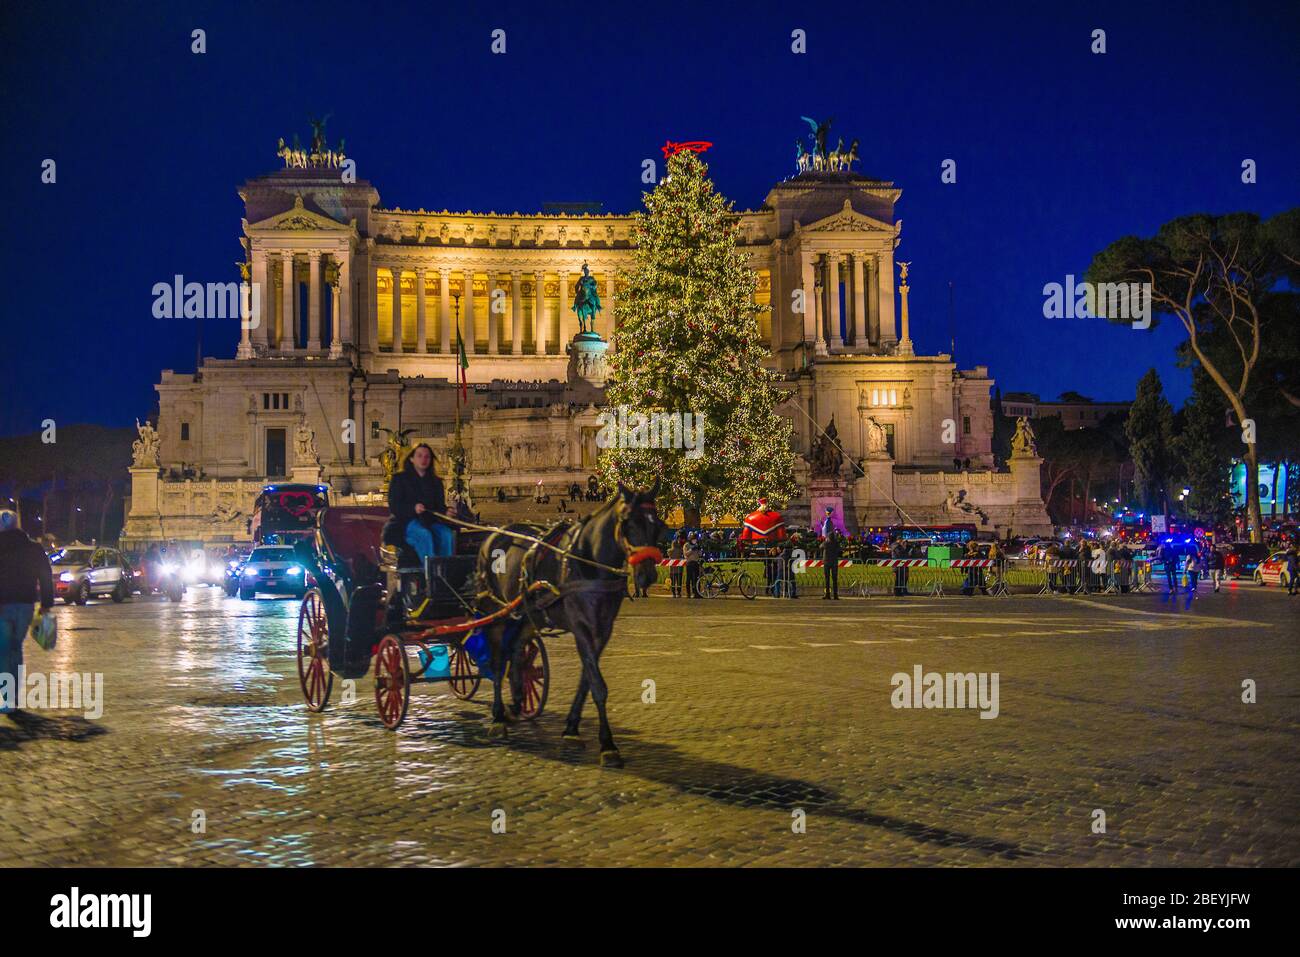 Albero Di Natale Roma 2020.Natale A Roma Immagini E Fotos Stock Alamy